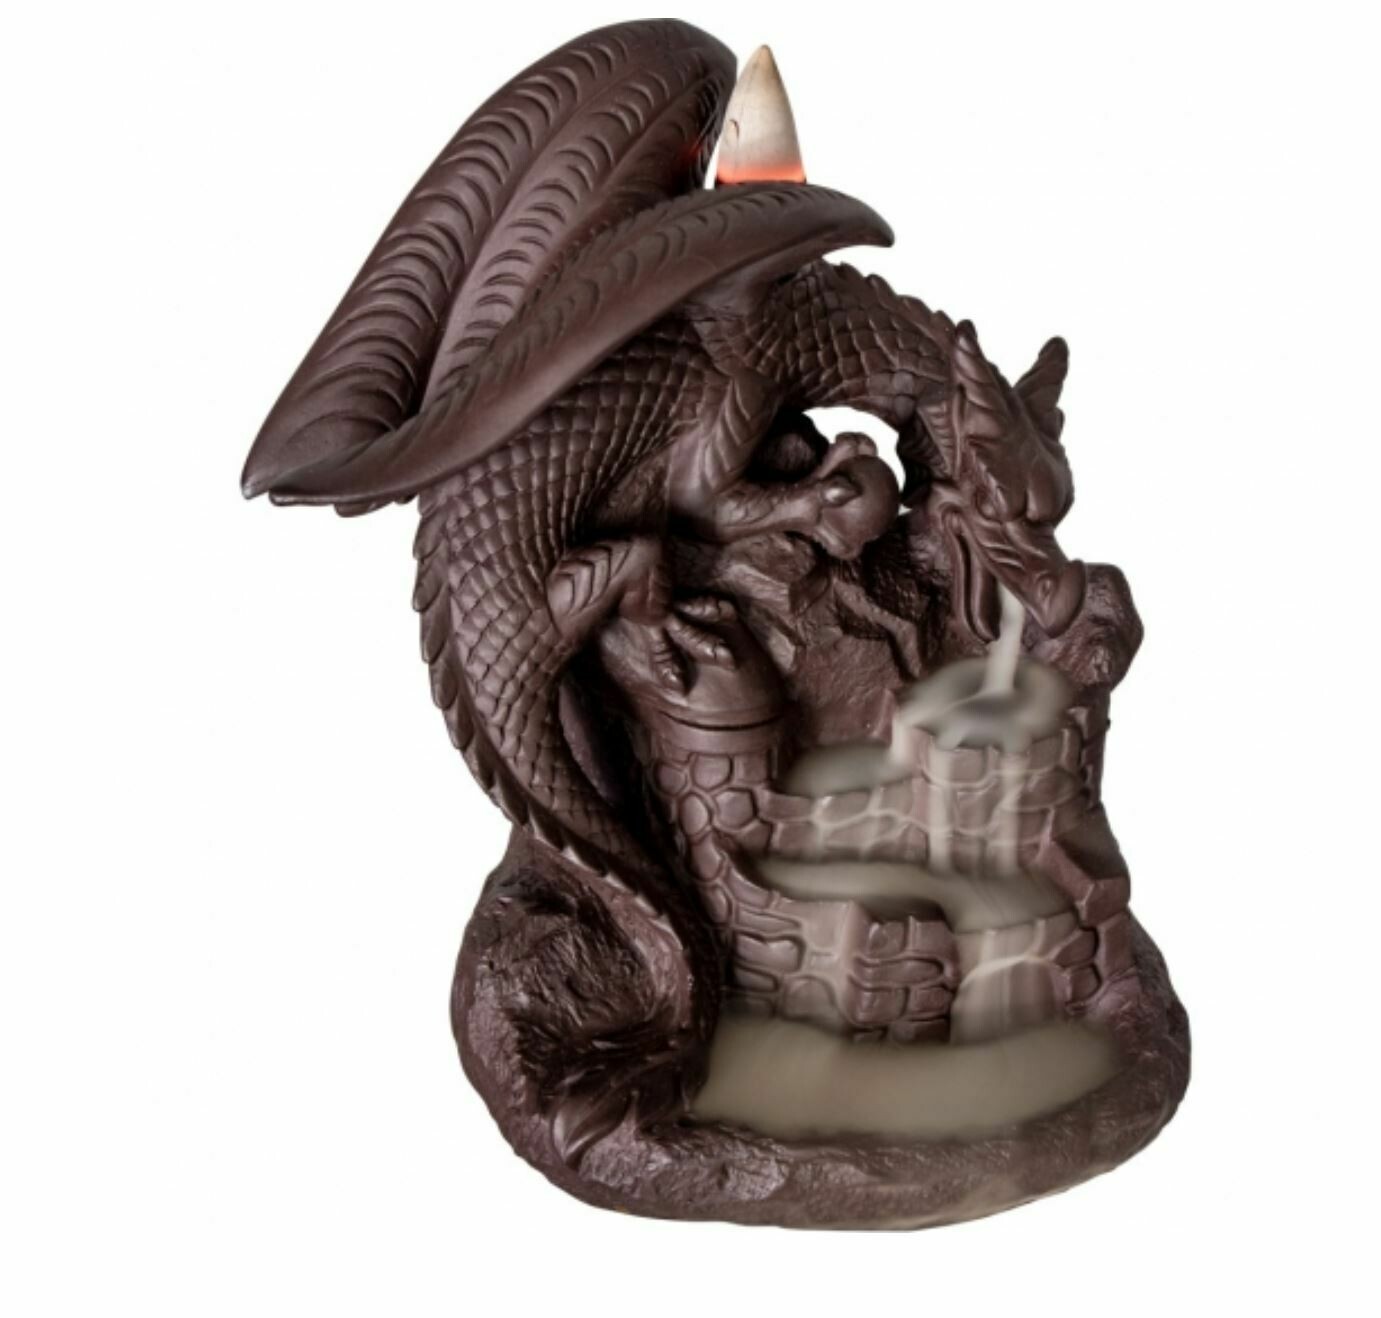 Ceramic Backflow Incense Burner - Dragon on Castle